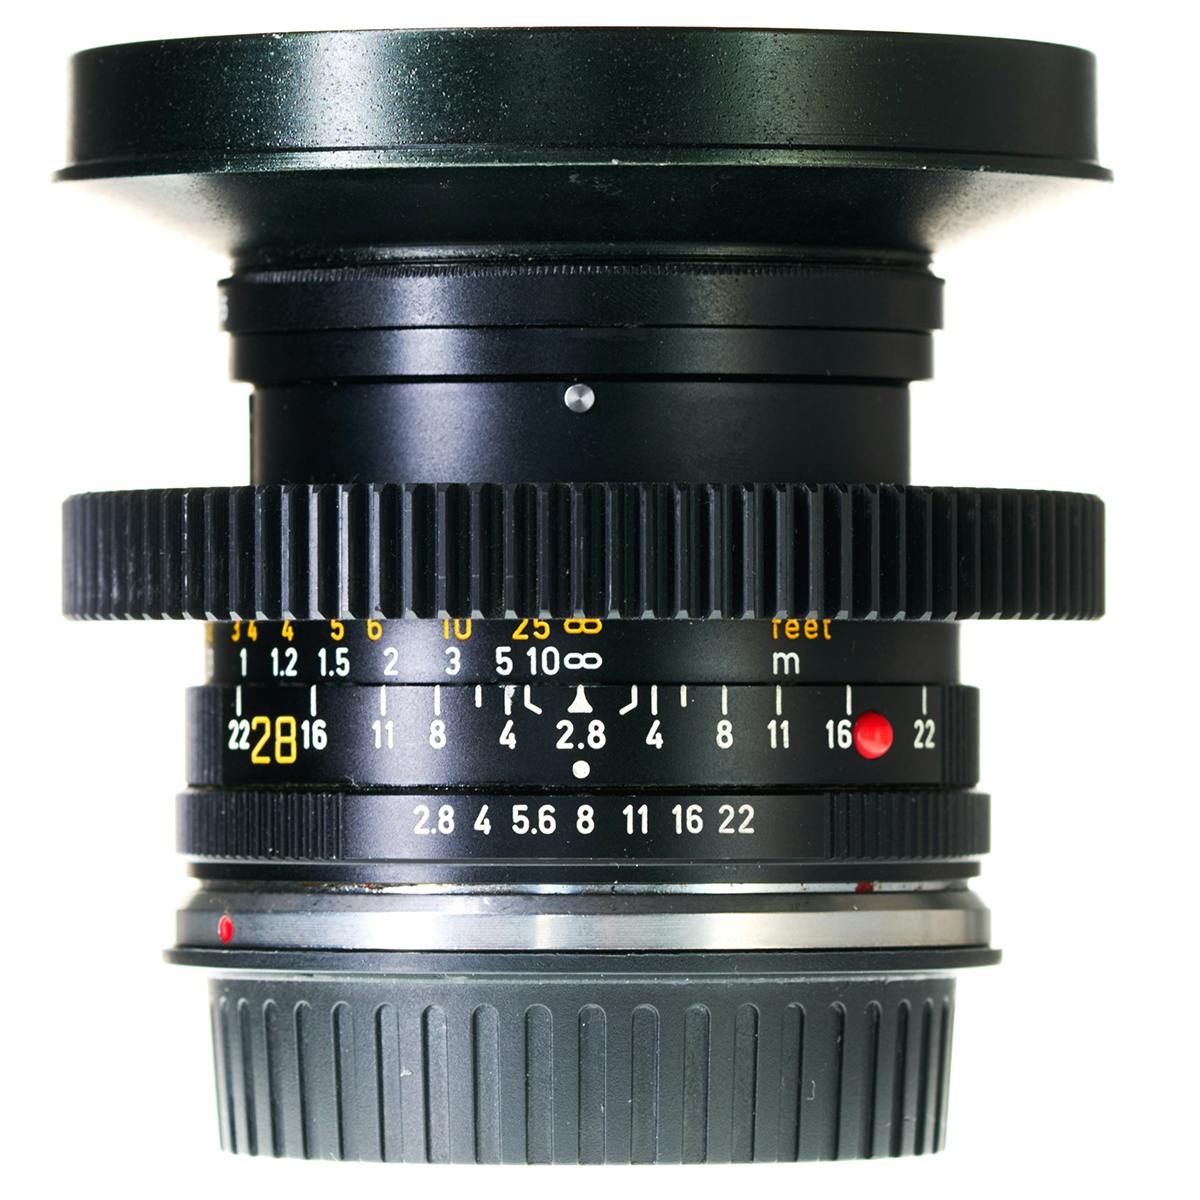 Leica Elmarit-R 28mm f2.8